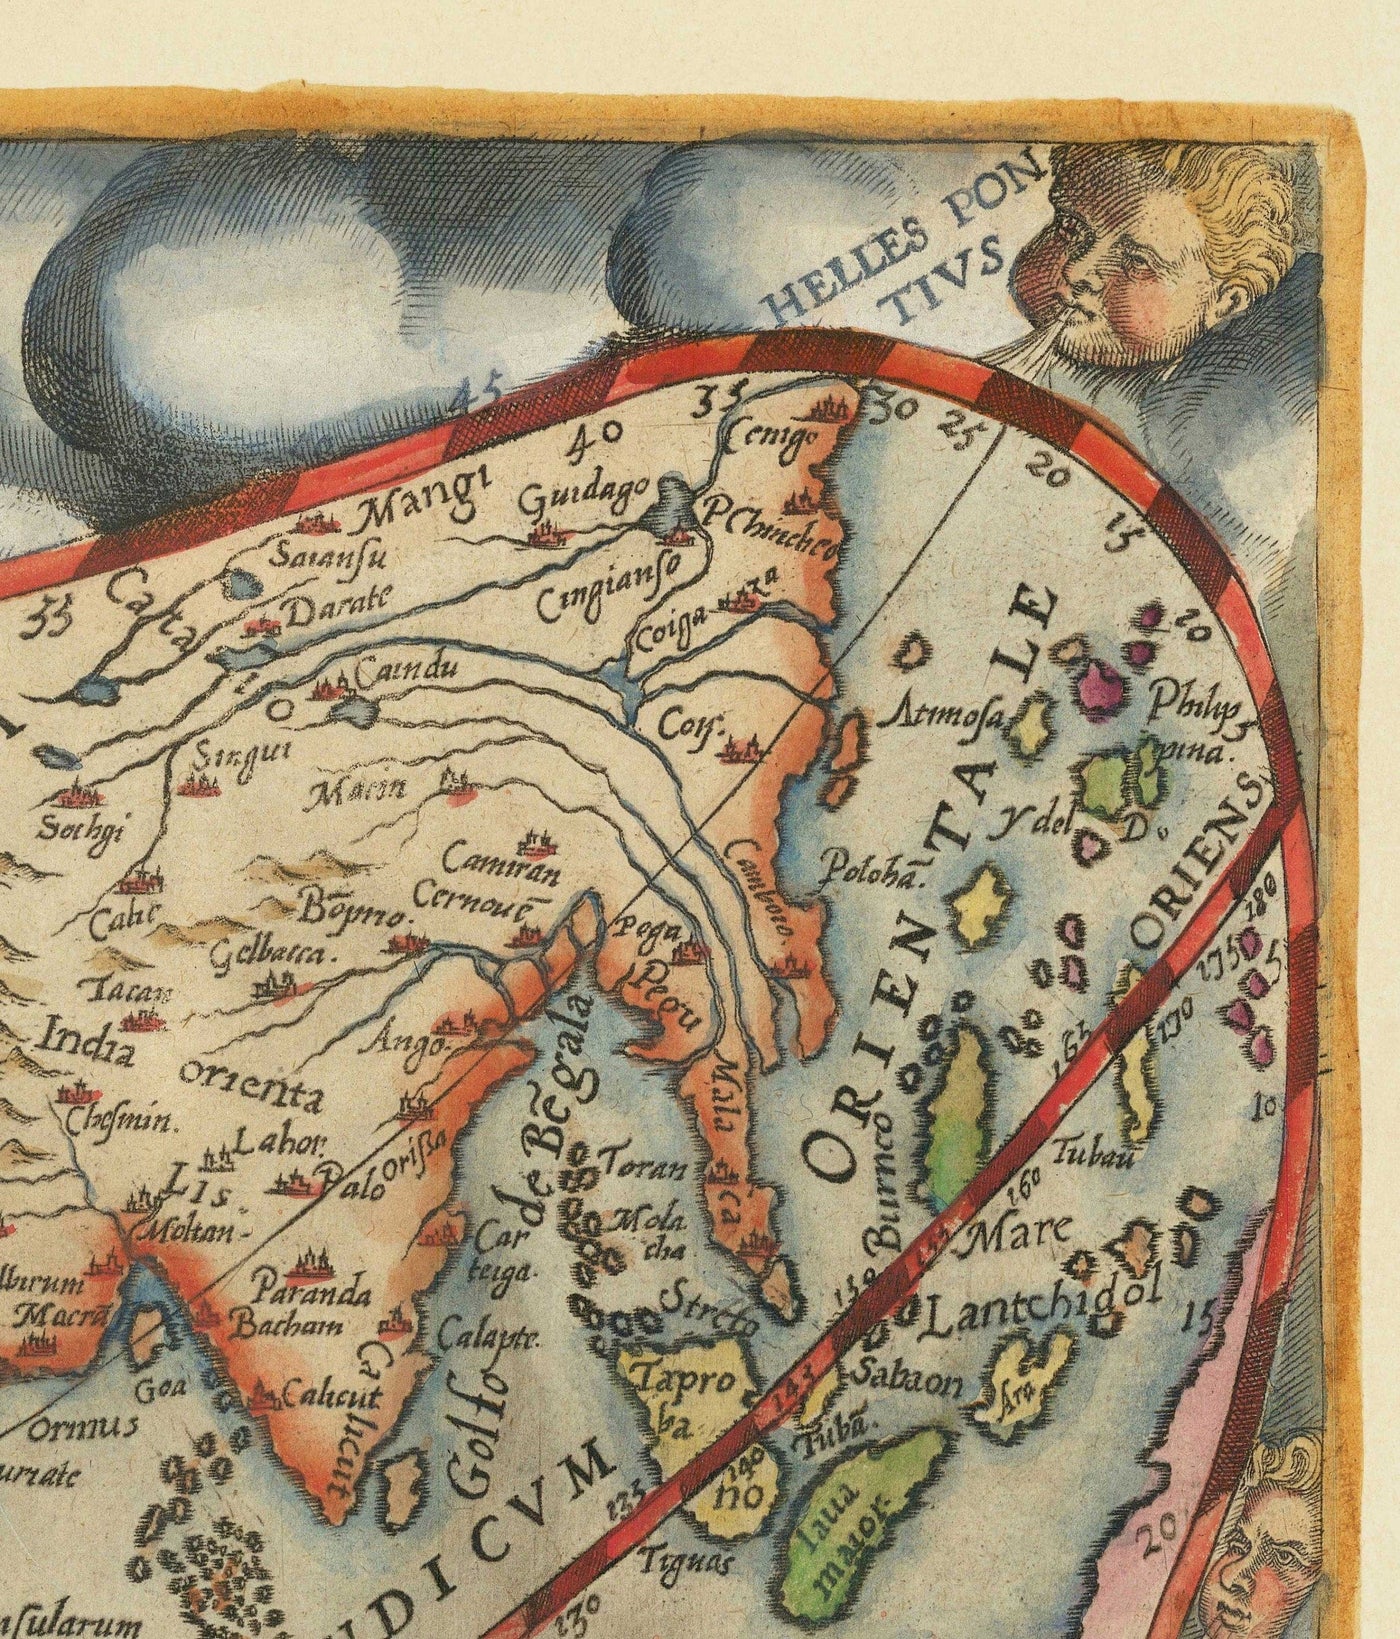 Très ancienne carte du monde, 1571 par Gerard de Jode - Projection codiforme, chérubs, Antarctique, Atlas, Colonialisme précoce